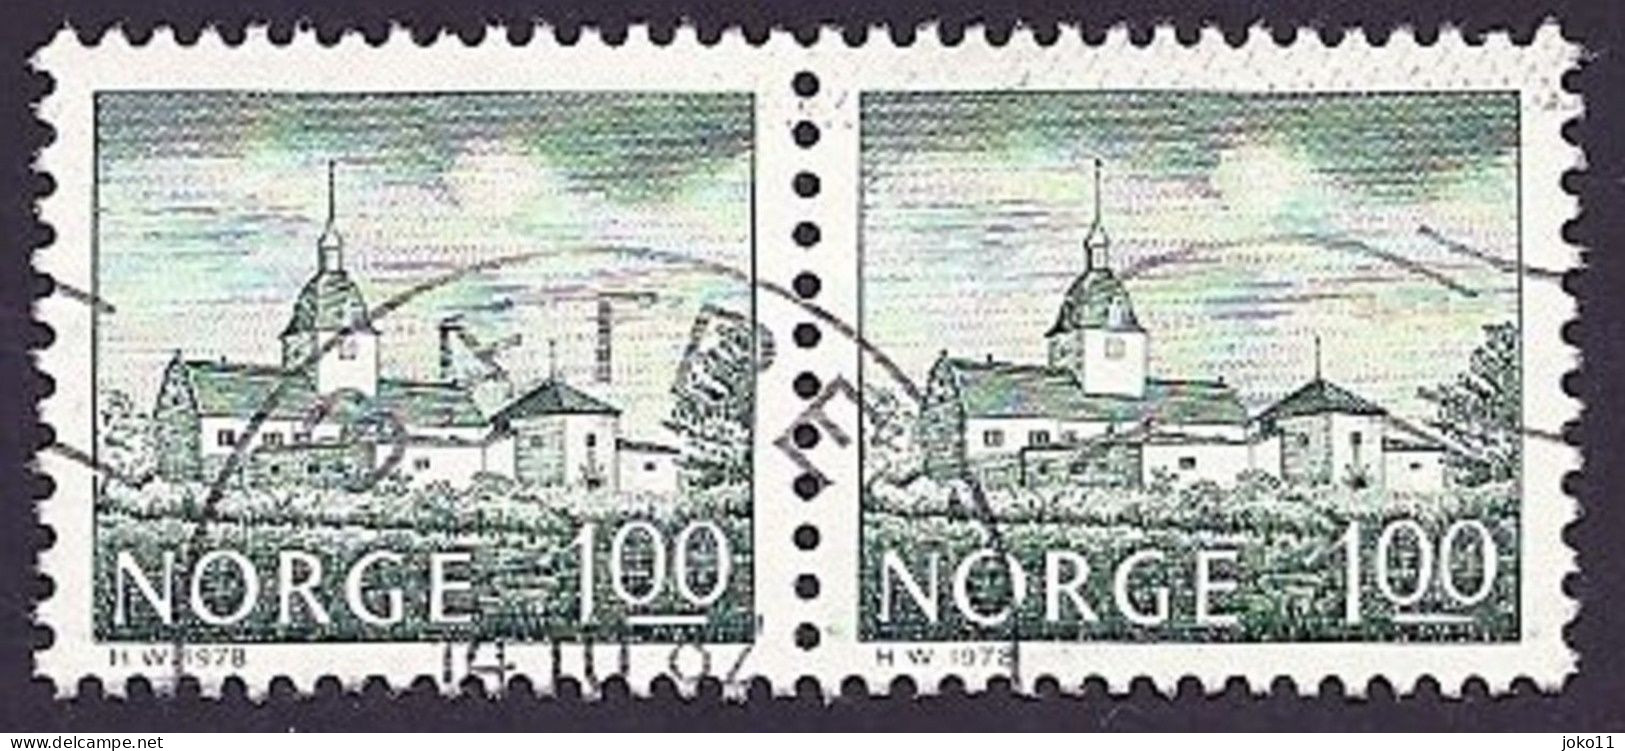 Norwegen, 1978, Mi.-Nr. 766, Gestempelt - Used Stamps